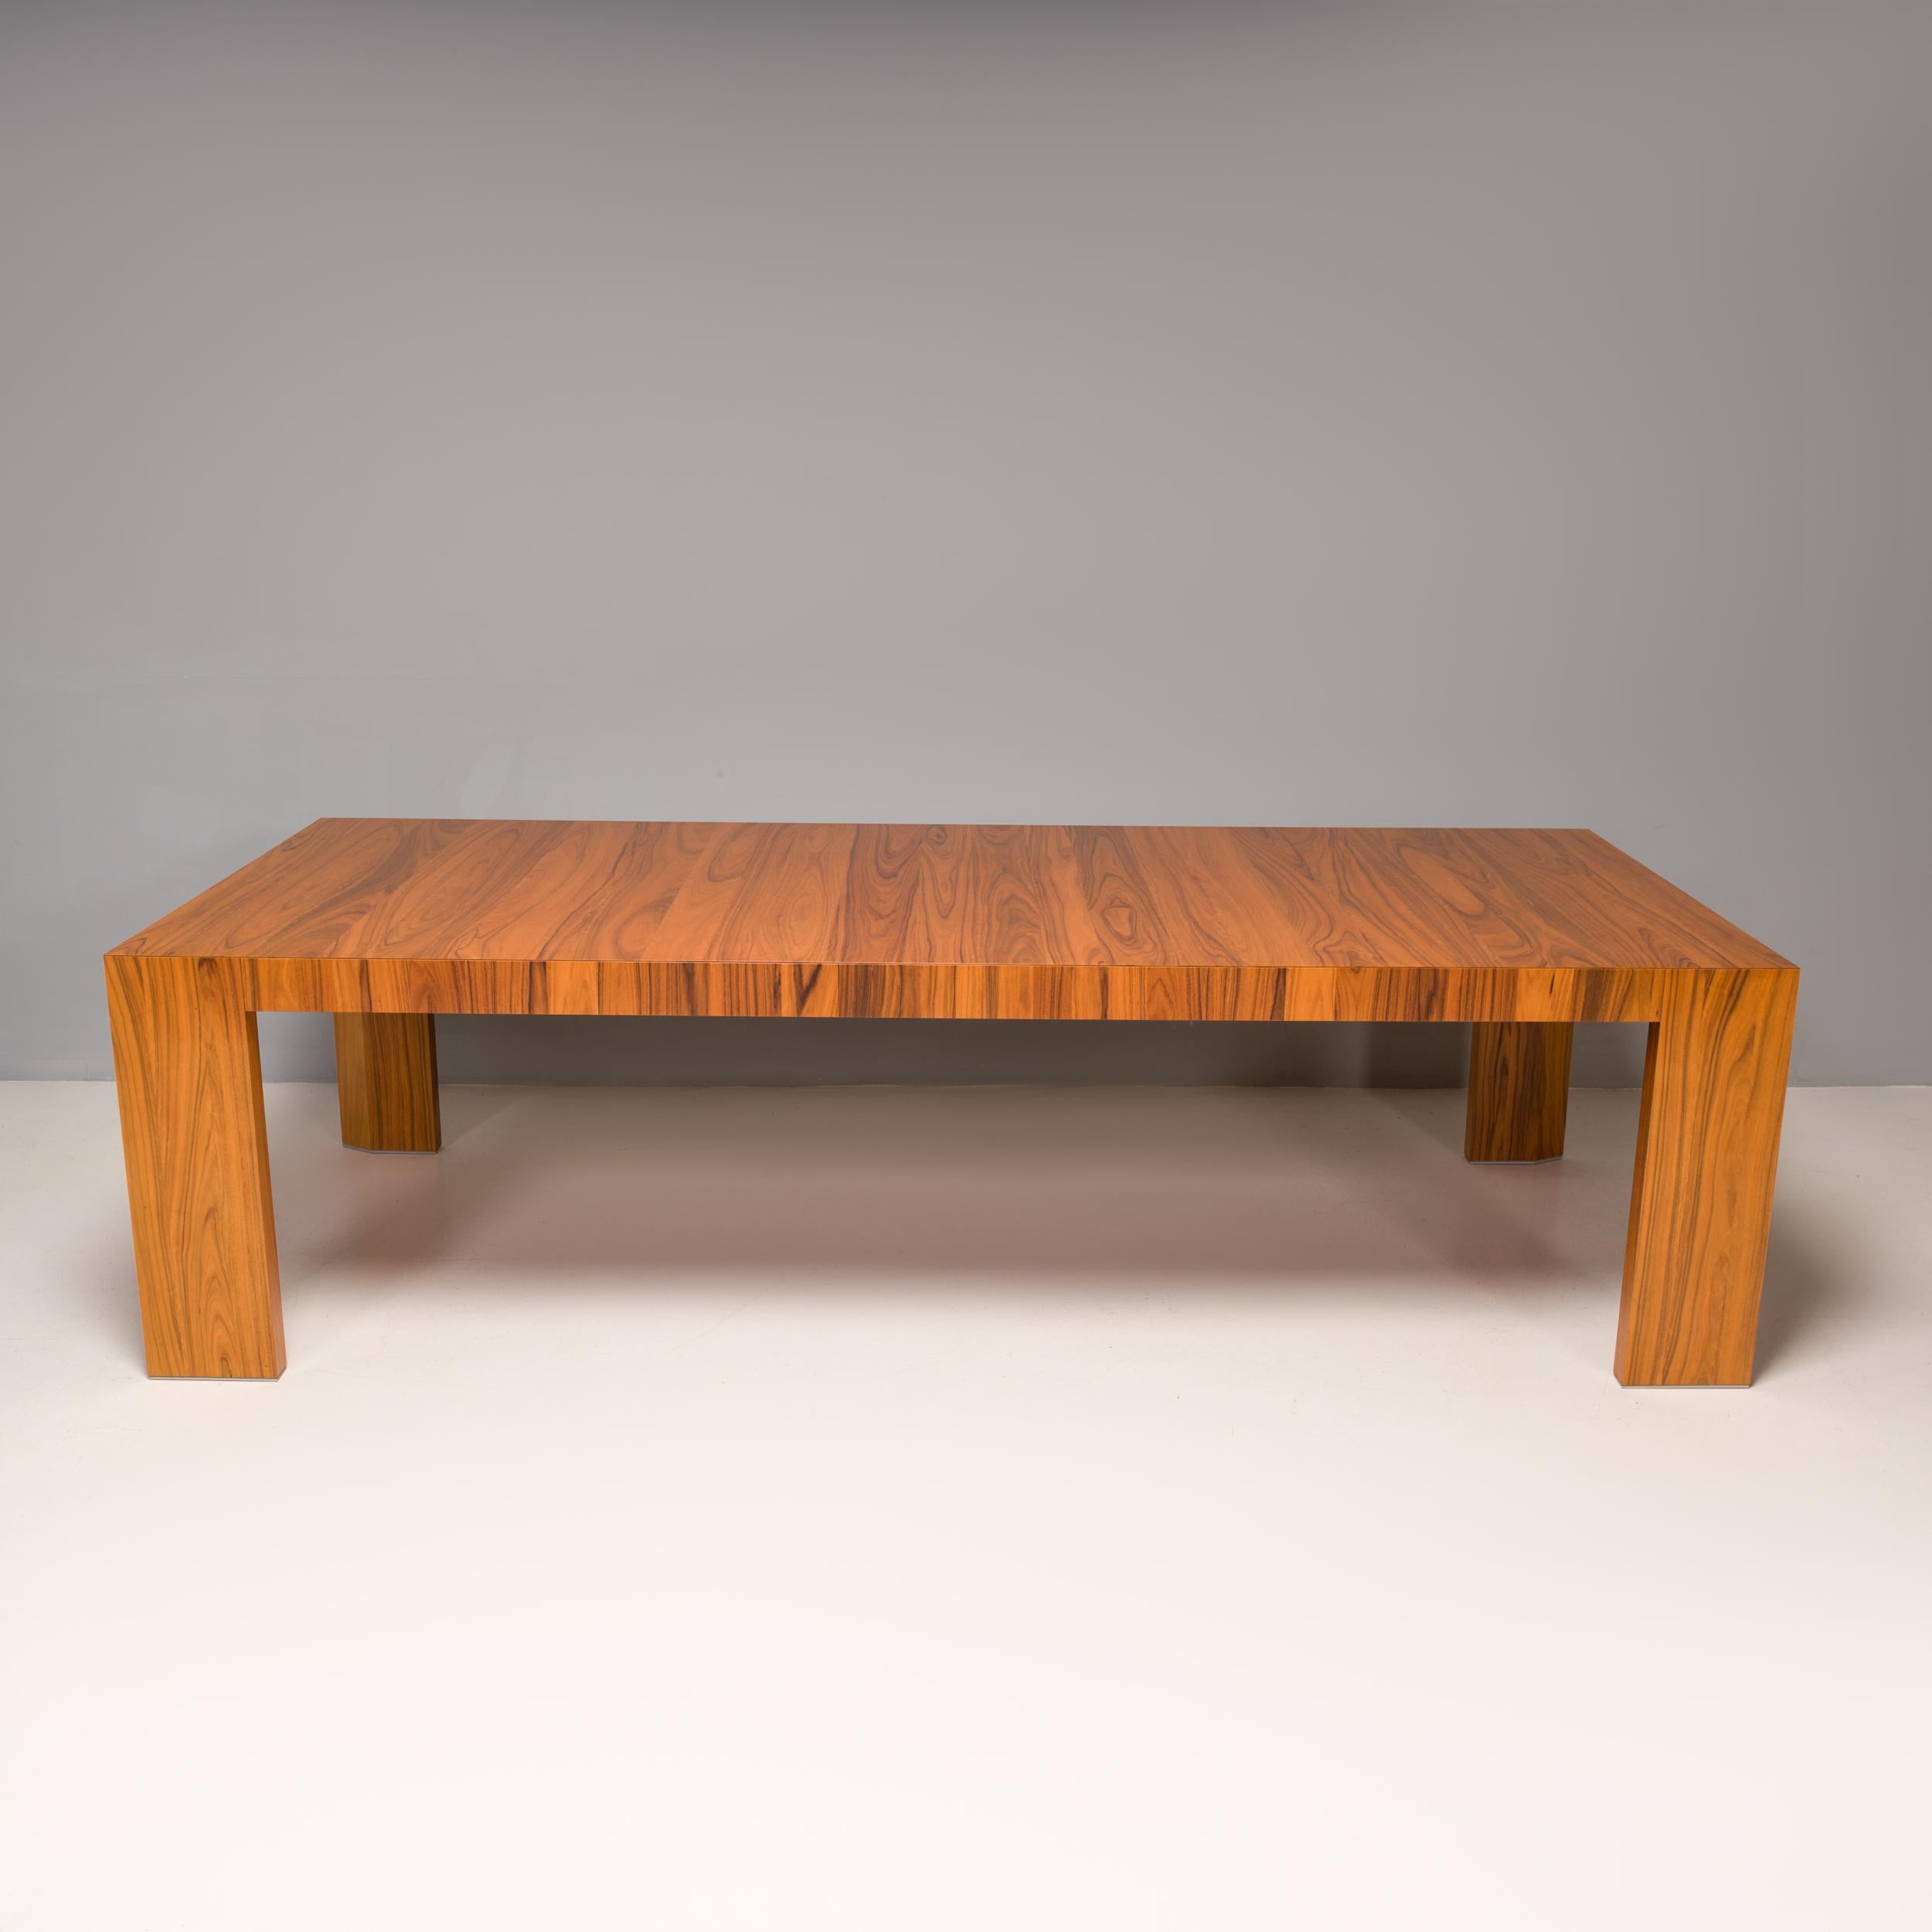 Conçue à l'origine par Hannes Wettstein pour Cassina en 2005, la table de salle à manger El Dom est un chef-d'œuvre de minimalisme moderne.

Construite en bois de rose santos, le profil rectangulaire et fin de la table donne l'impression qu'elle est